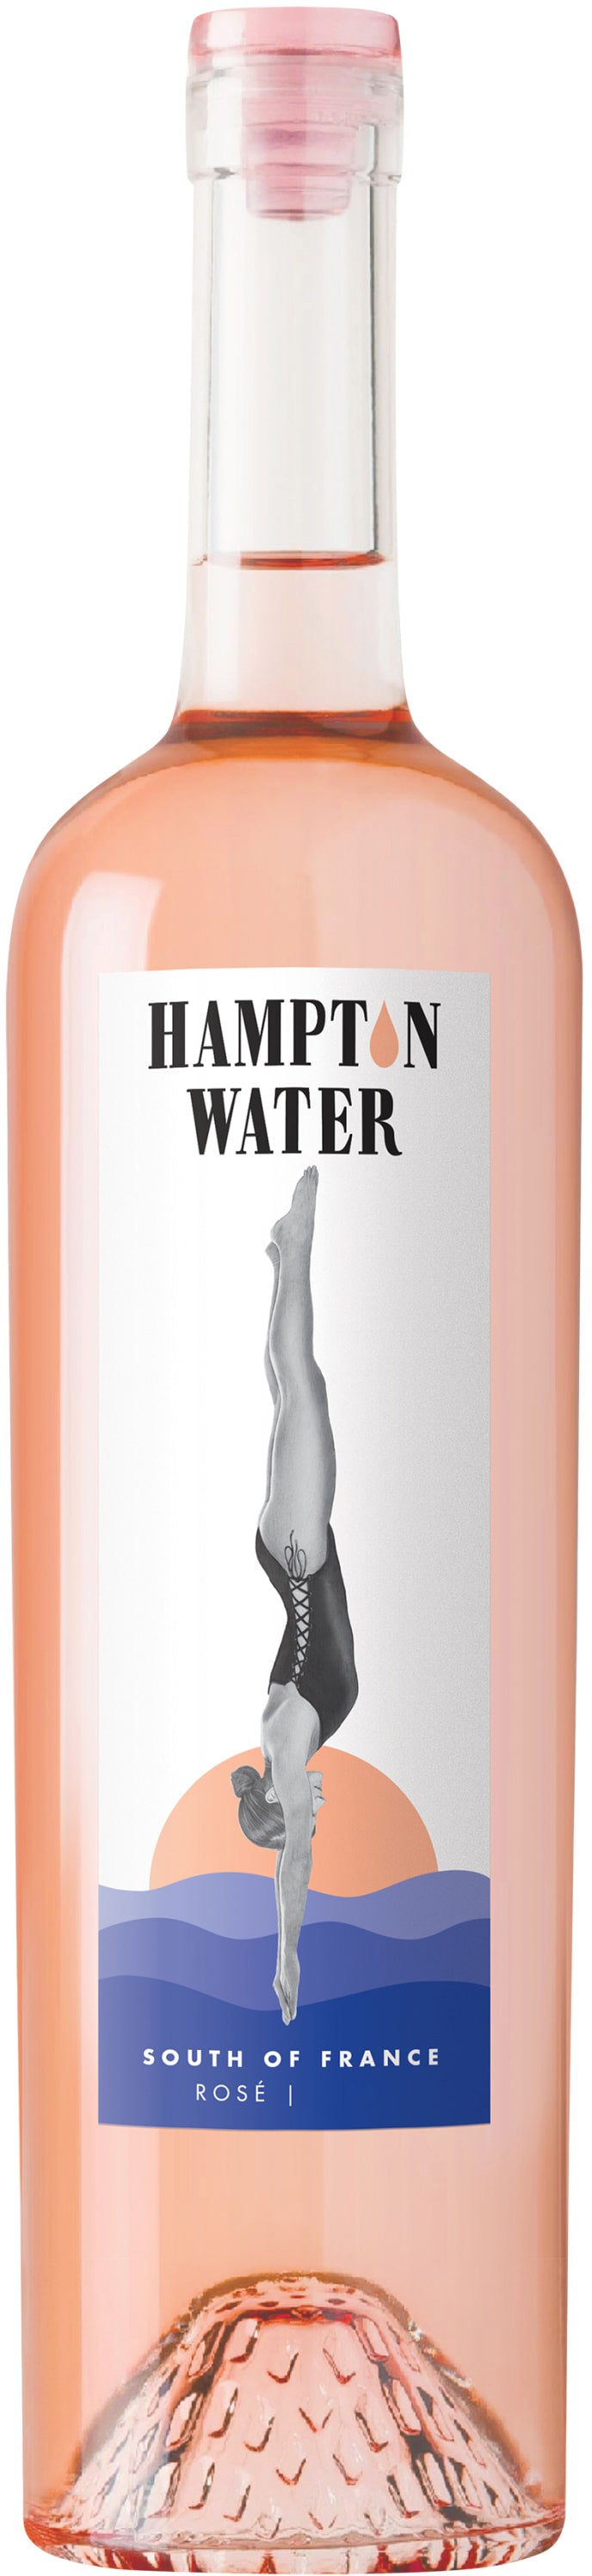 Hampton Water Rose 2021